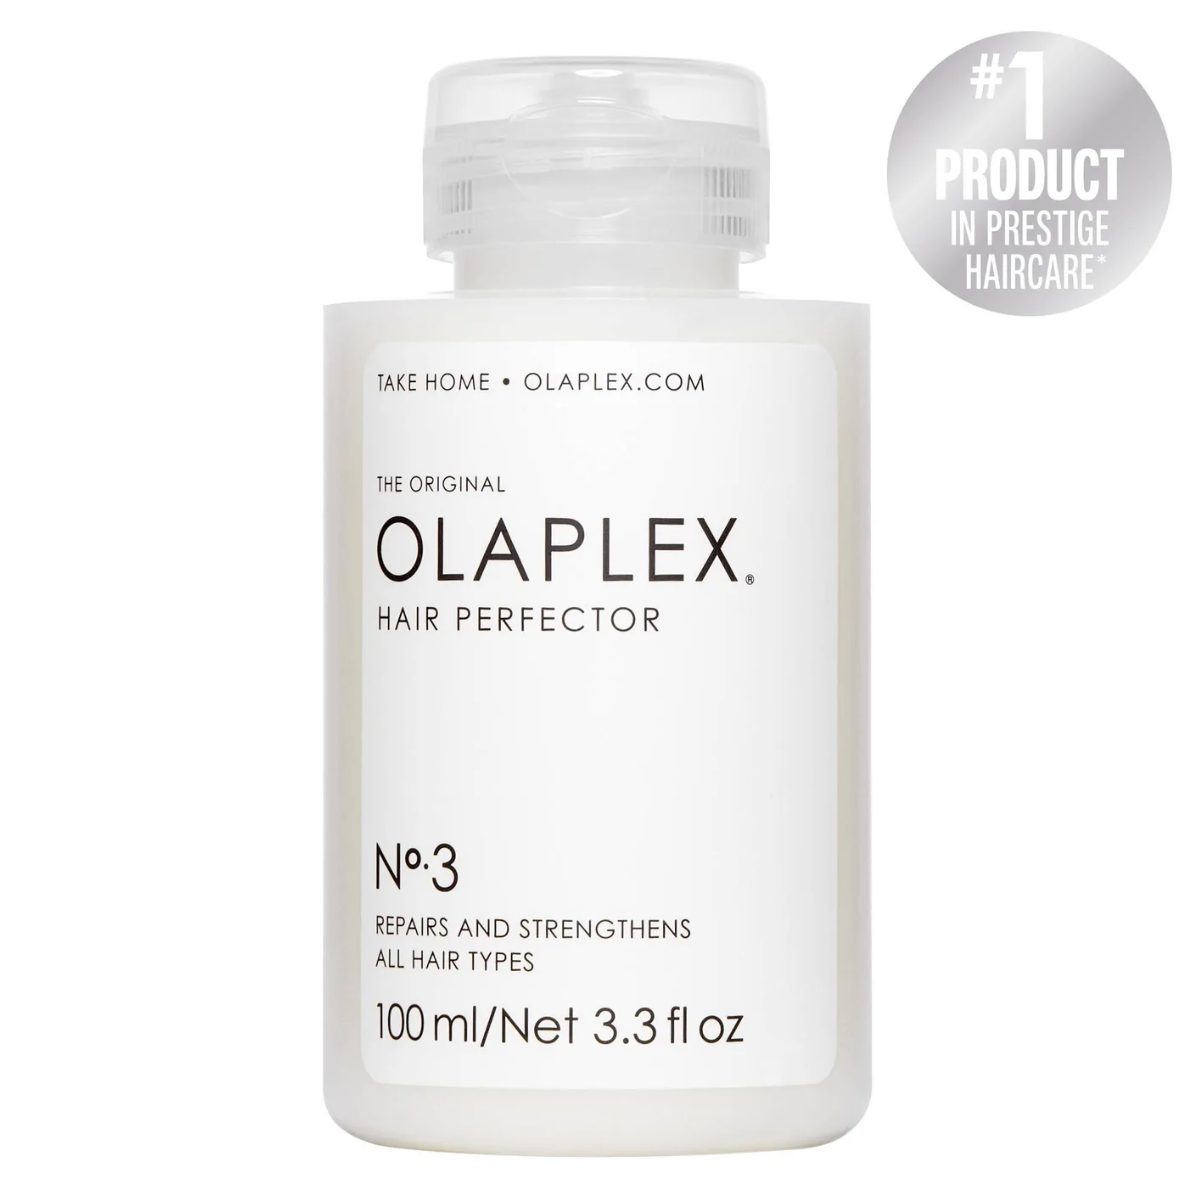 olaplex hair perfector is holy grail hair repair product